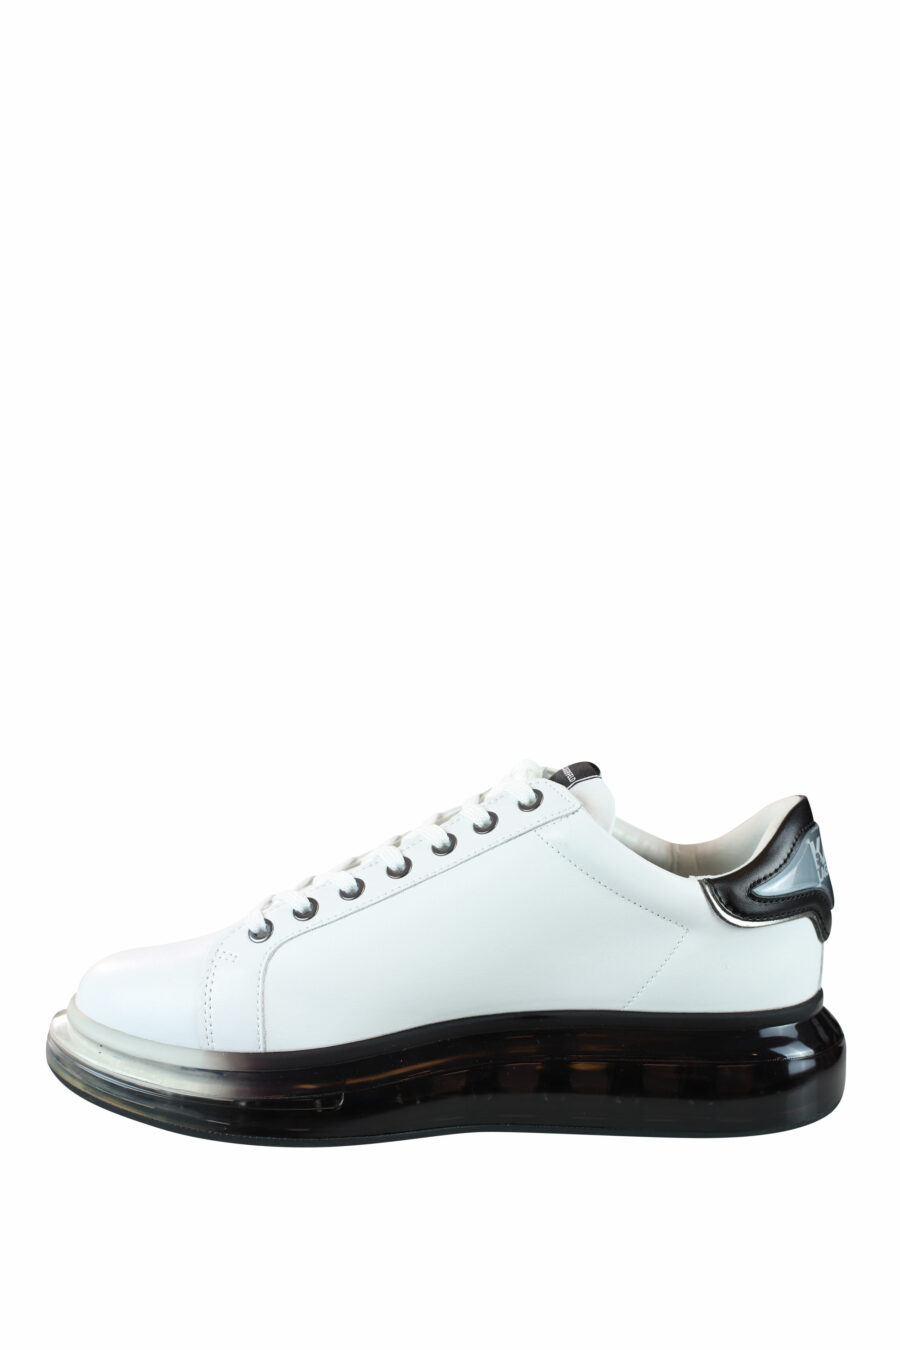 Zapatillas blancas con suela negra y logo degrade gris en silueta - IMG 0040